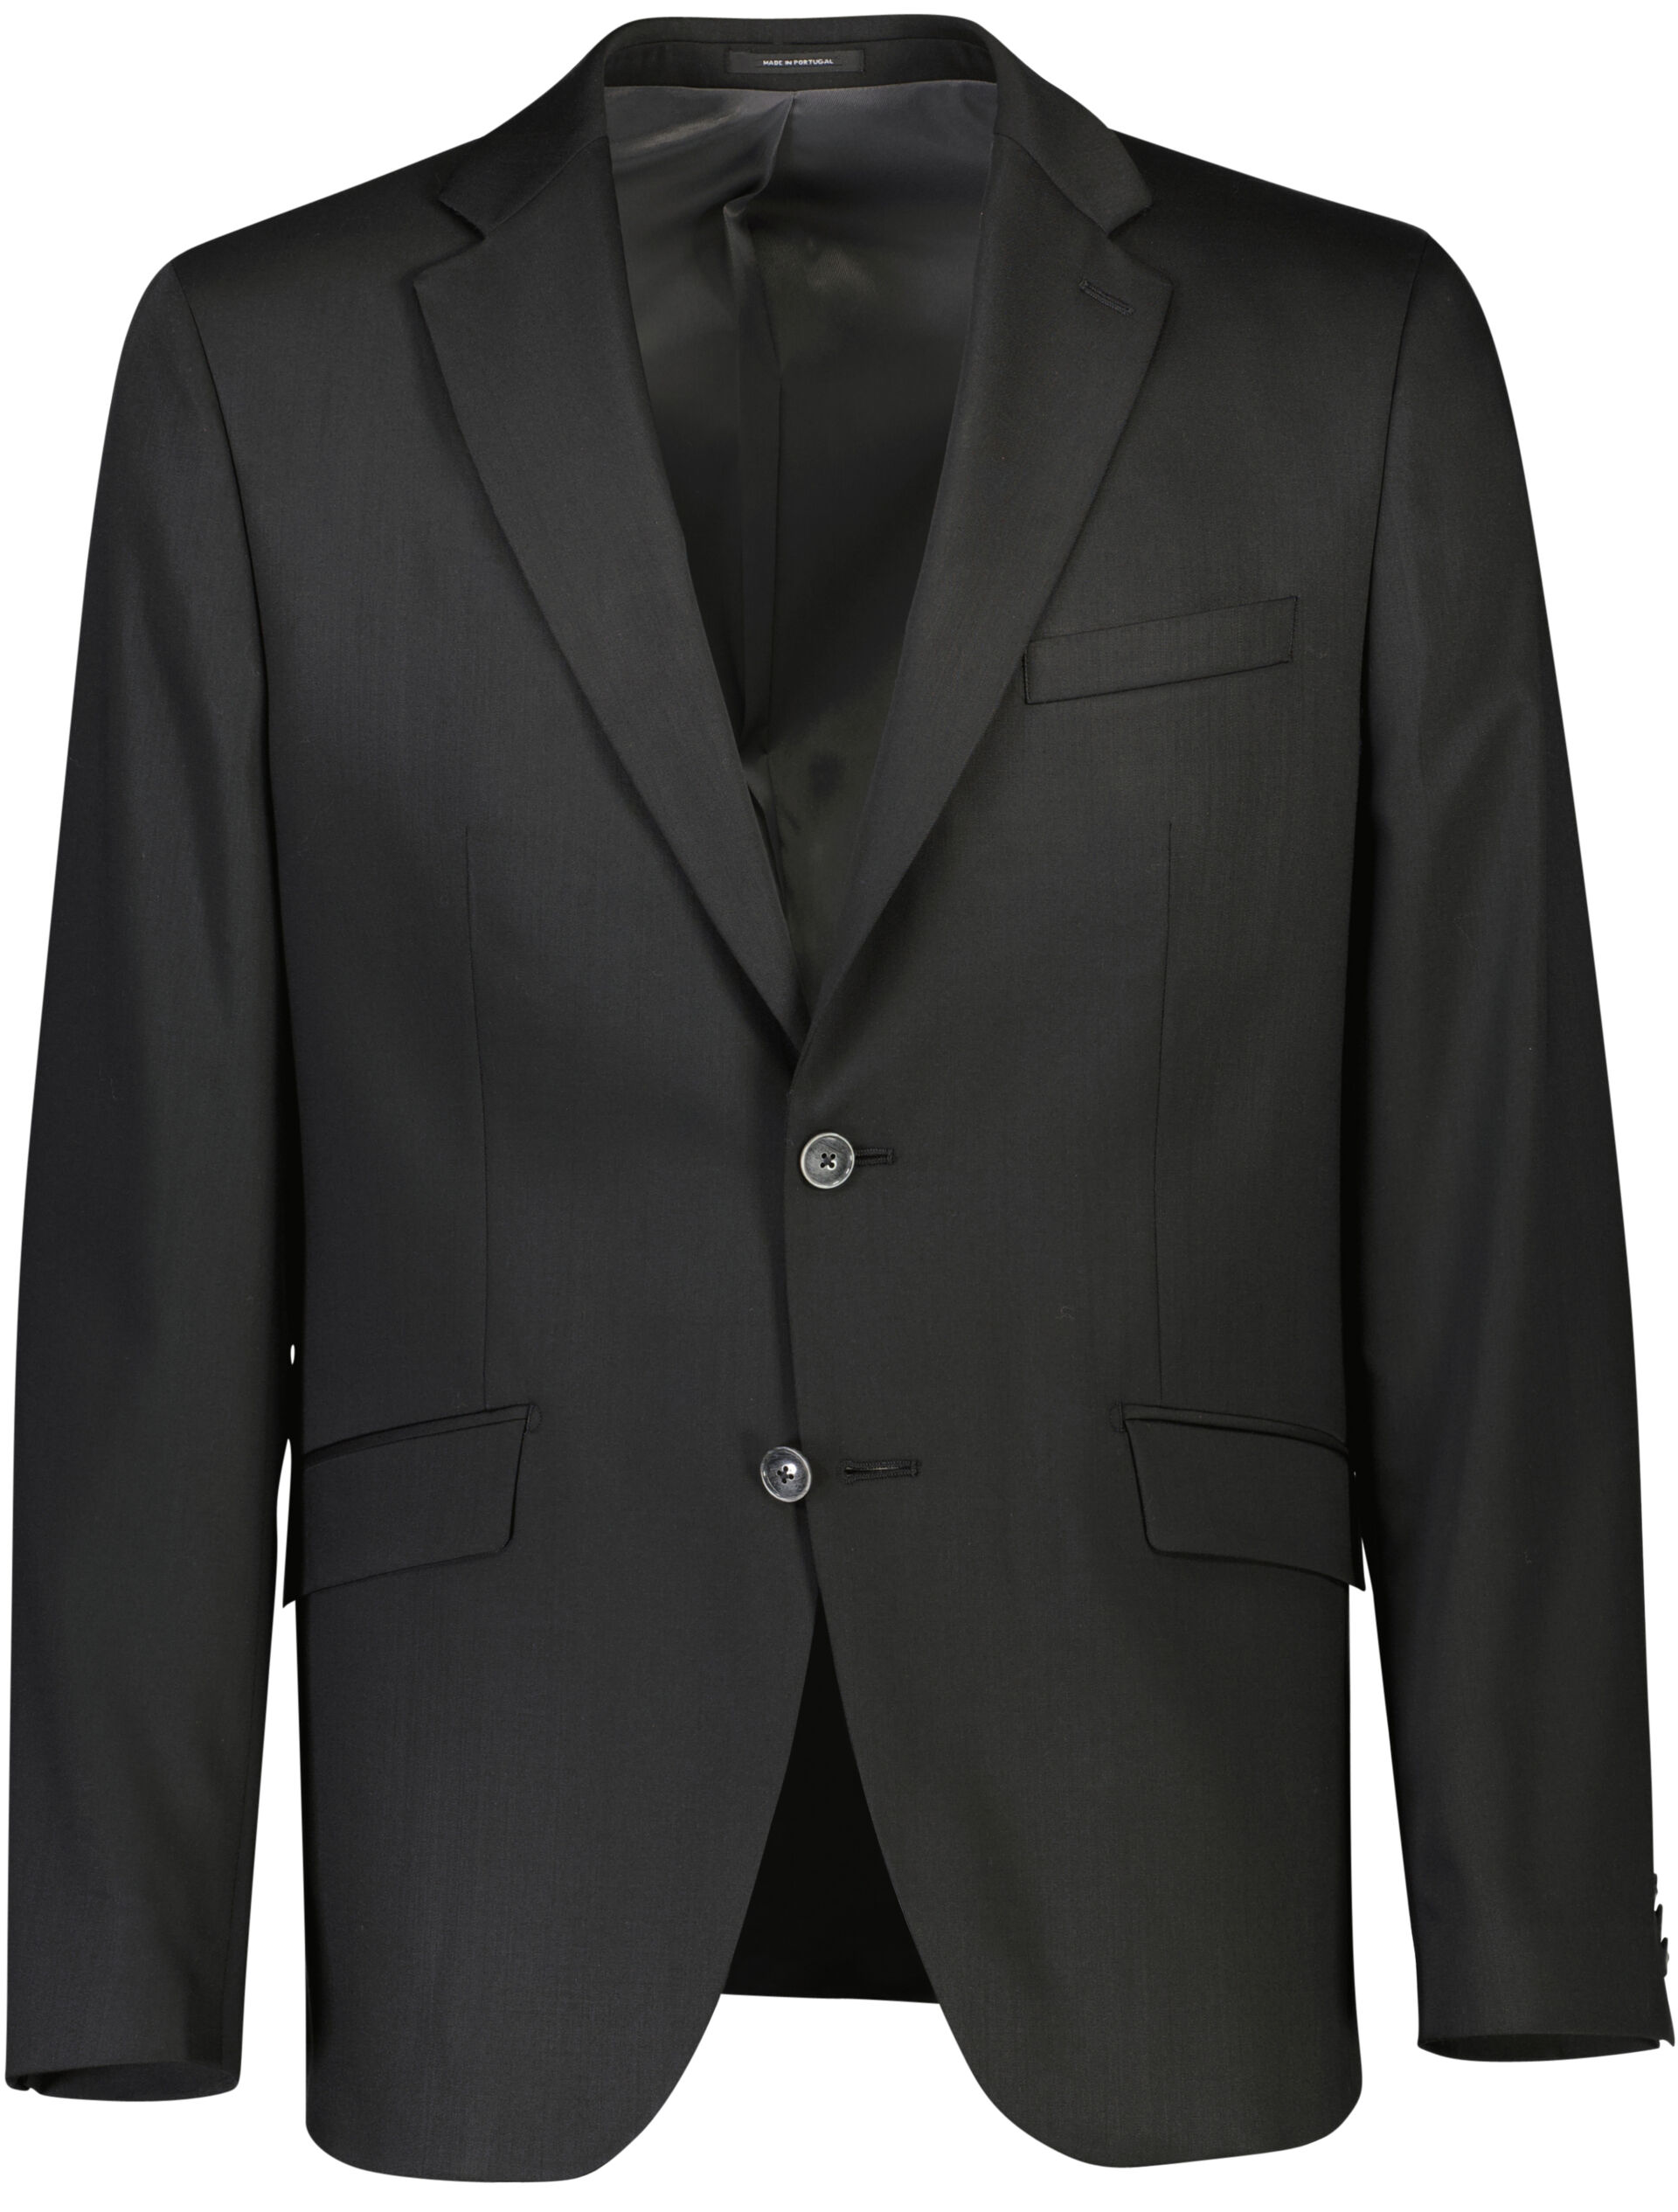 Suit jacket Suit jacket Black 30-349020-X